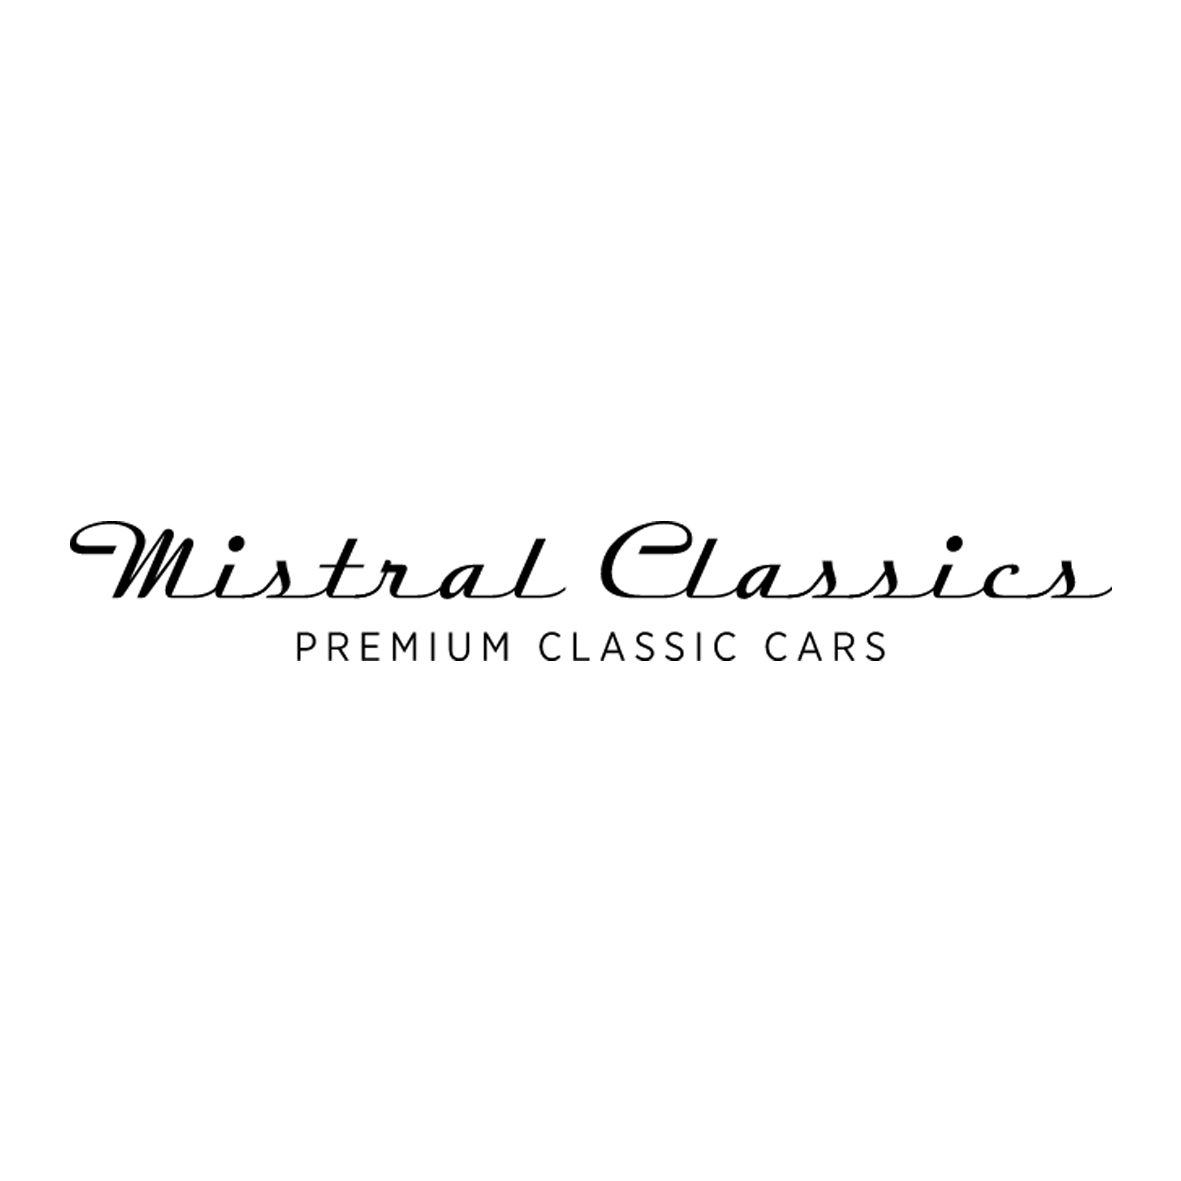 Mistral Classics